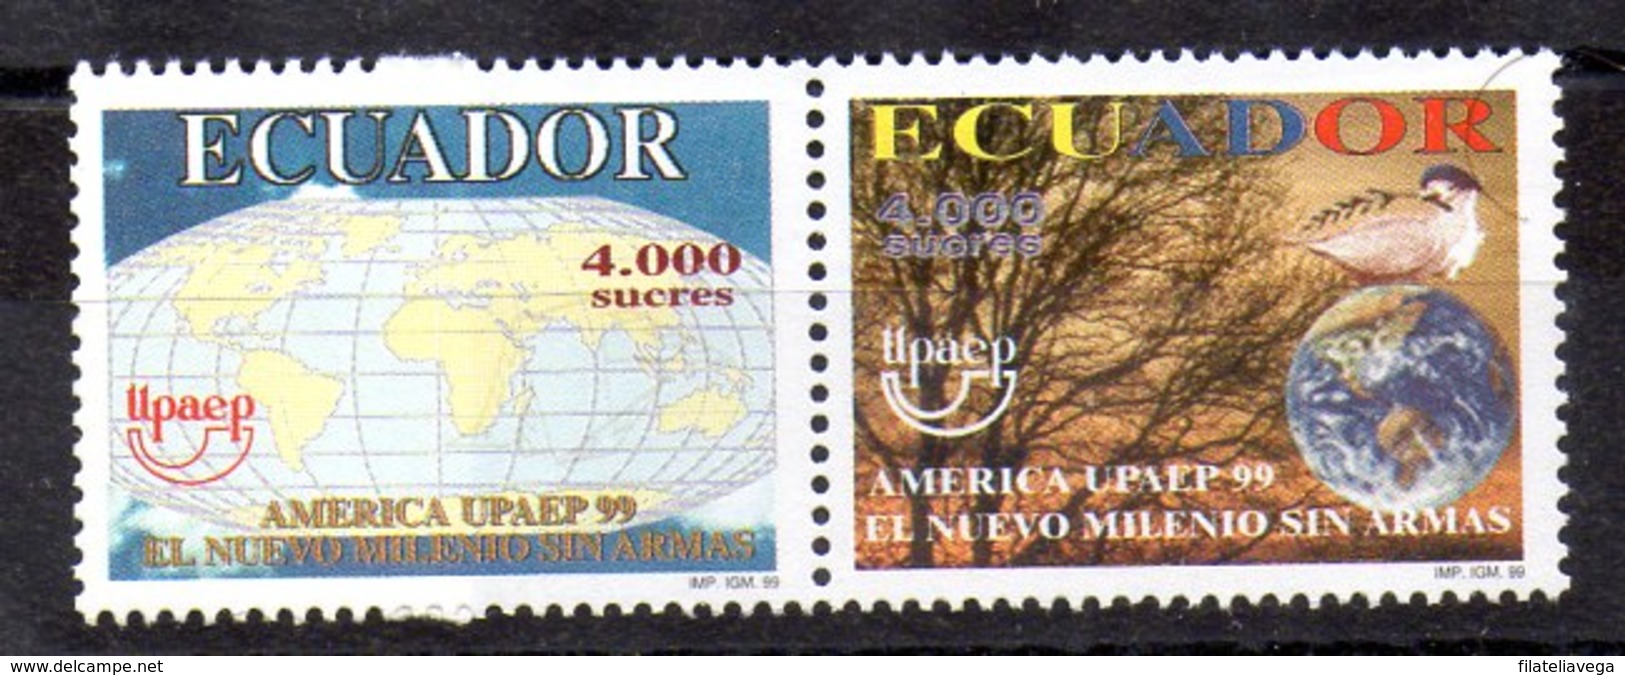 Serie De Ecuador Nº Yvert 1473/74 ** UPAE - Ecuador